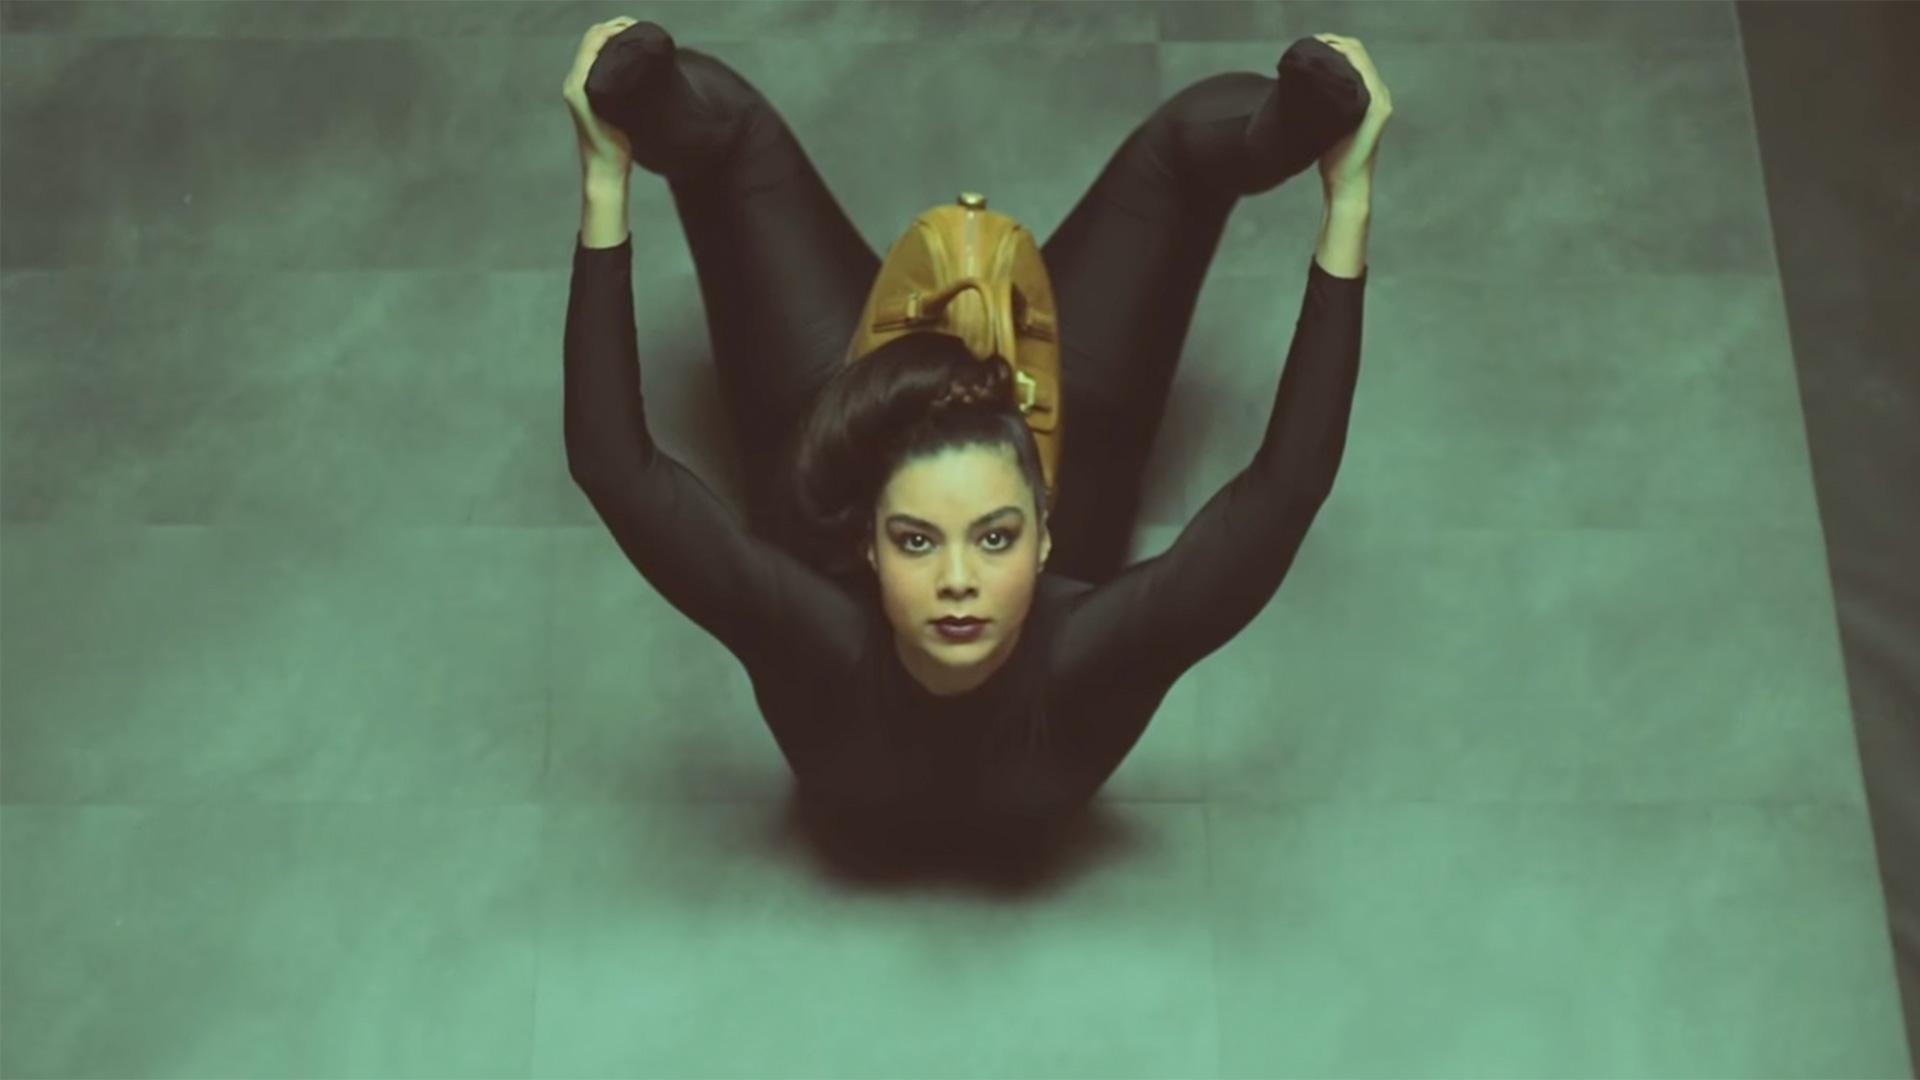 La contorsionniste pose la campagne publicitaire de la marque Pourchet maroquinerie.